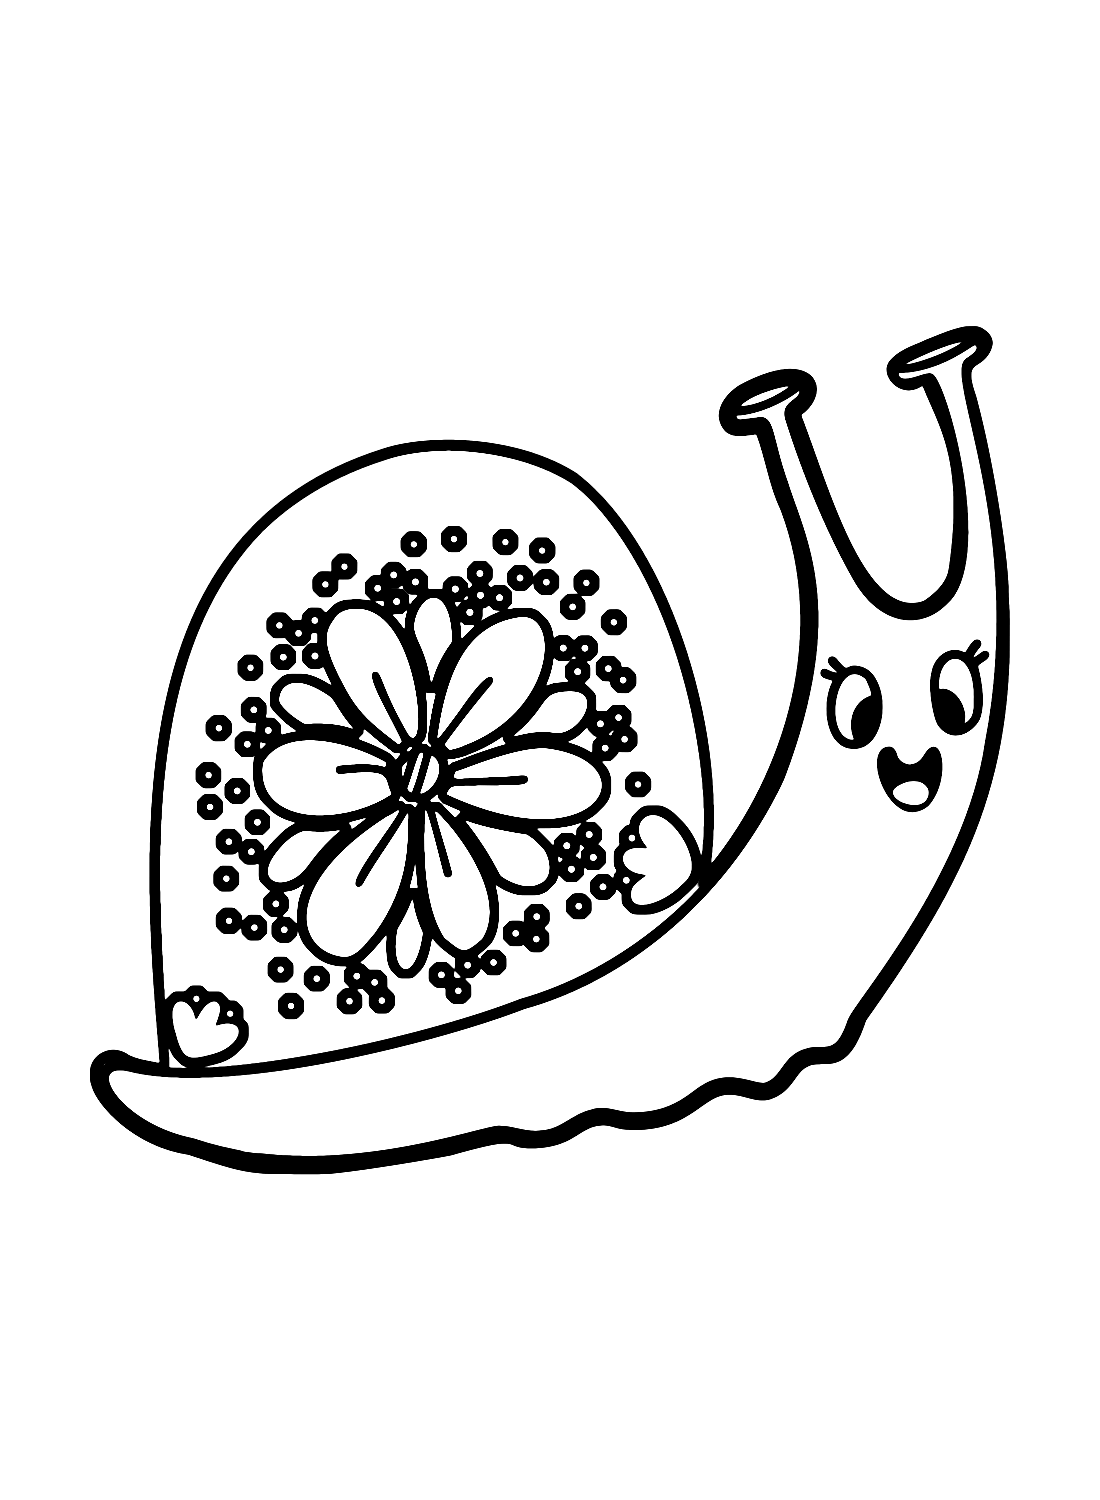 蜗牛与蜗牛的花